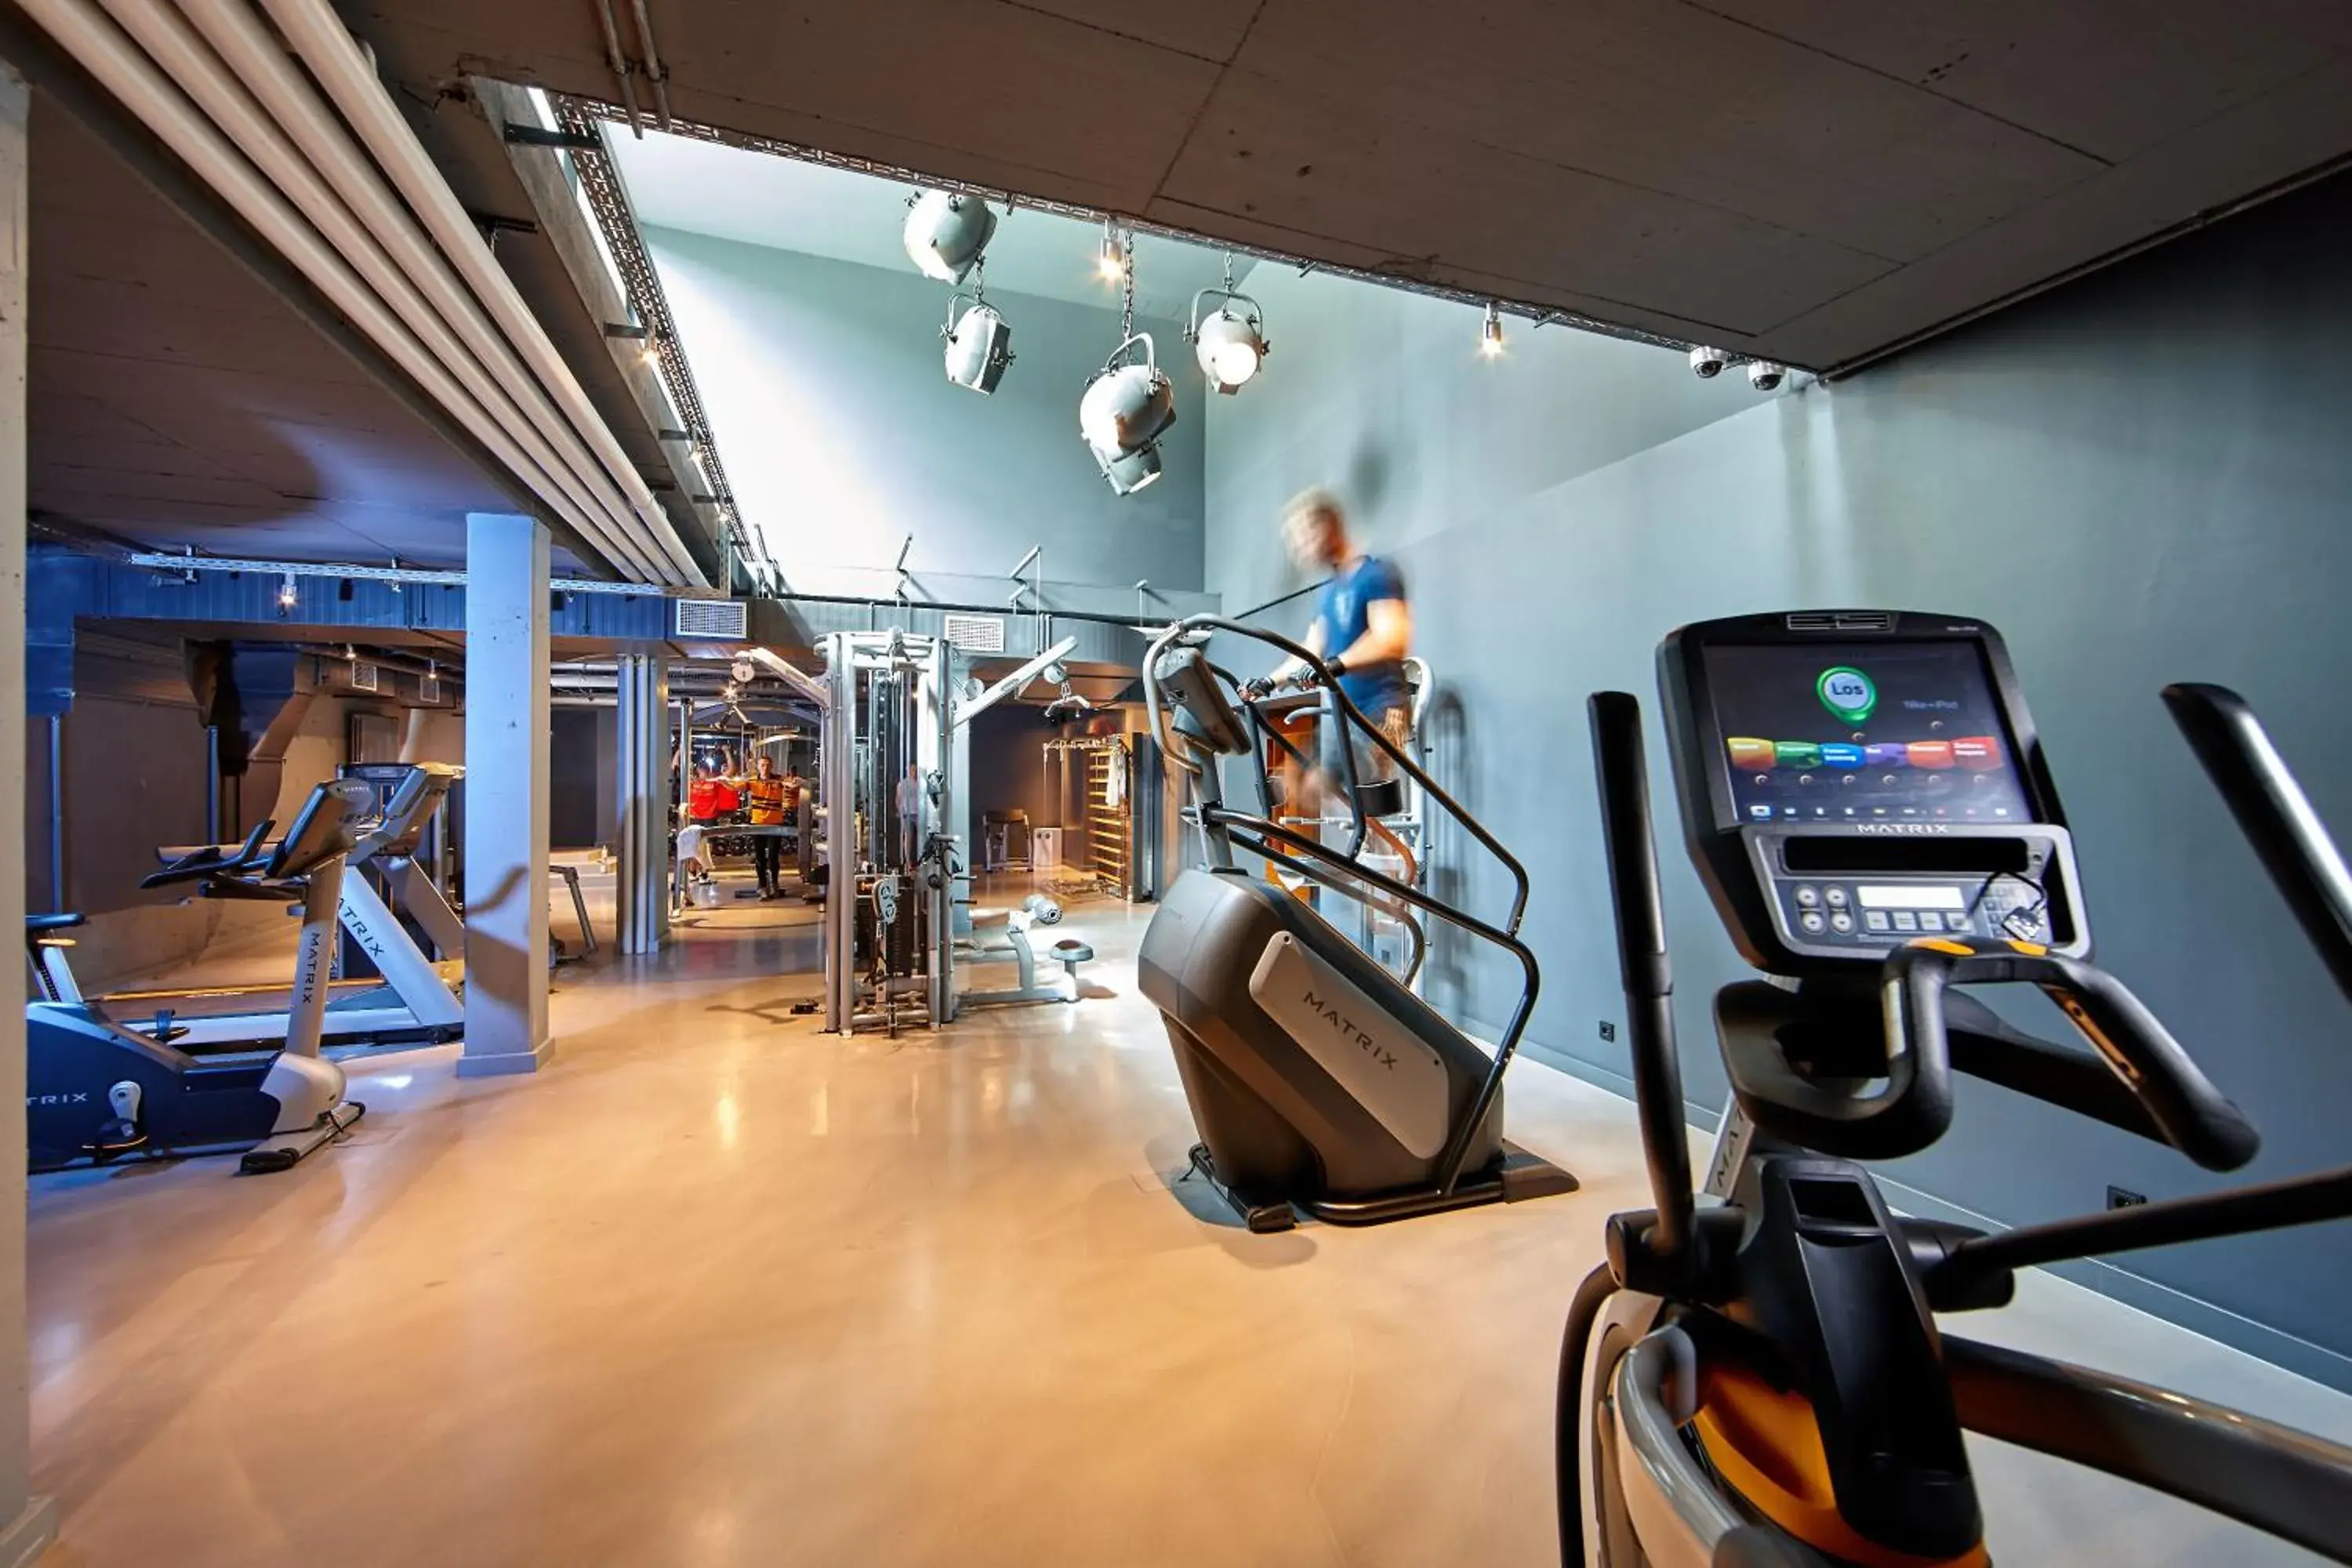 Fitness centre/facilities, Fitness Center/Facilities in Hotel Königshof